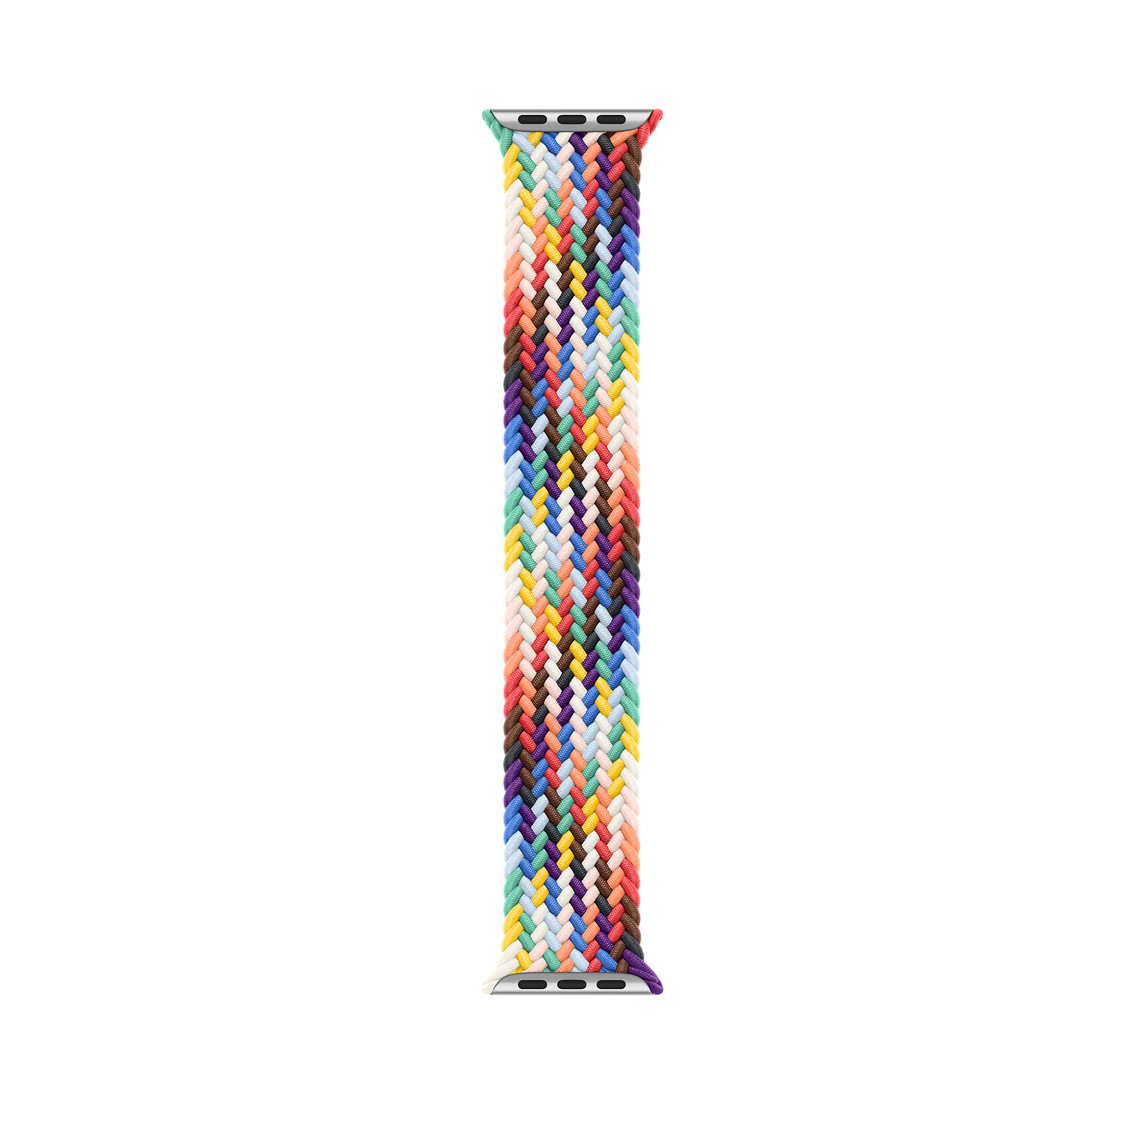 Correa Solo Loop trenzada Edición Orgullo (arcoíris) de tejido de poliéster trenzado con hilos de silicona sin hebillas ni cierres